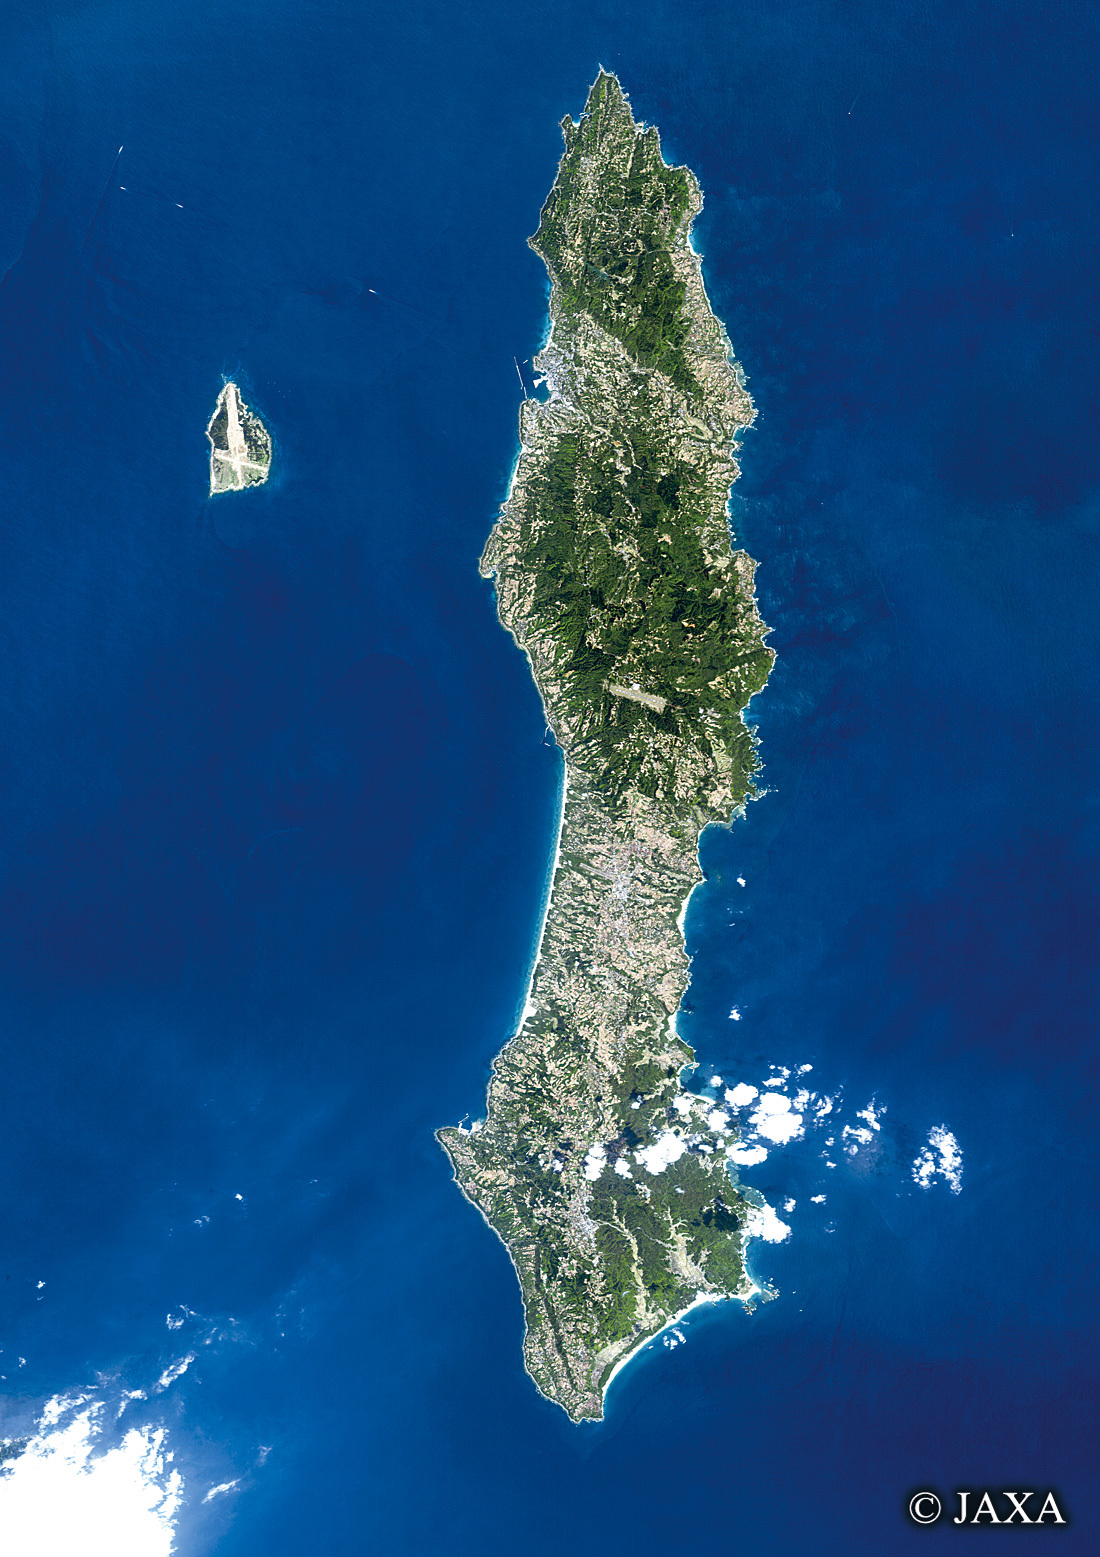 だいちから見た日本の都市 種子島:衛星画像